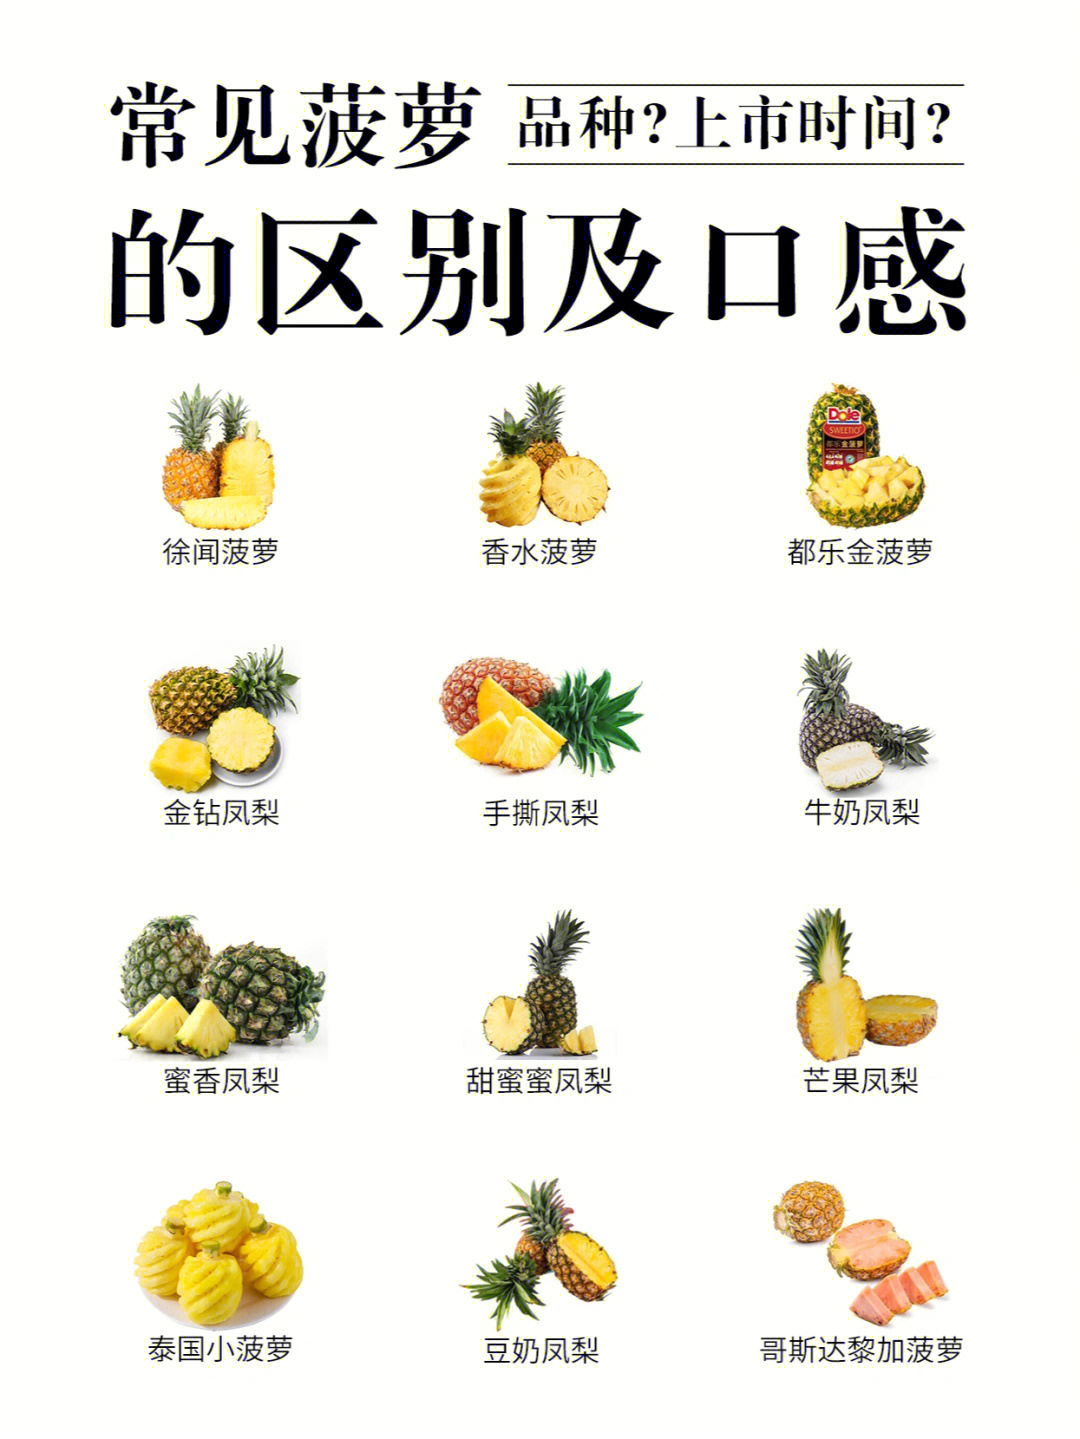 果香浓郁﹏﹏﹏﹏﹏﹏﹏﹏﹏﹏香水菠萝【产地】云南,广西,海南【上市